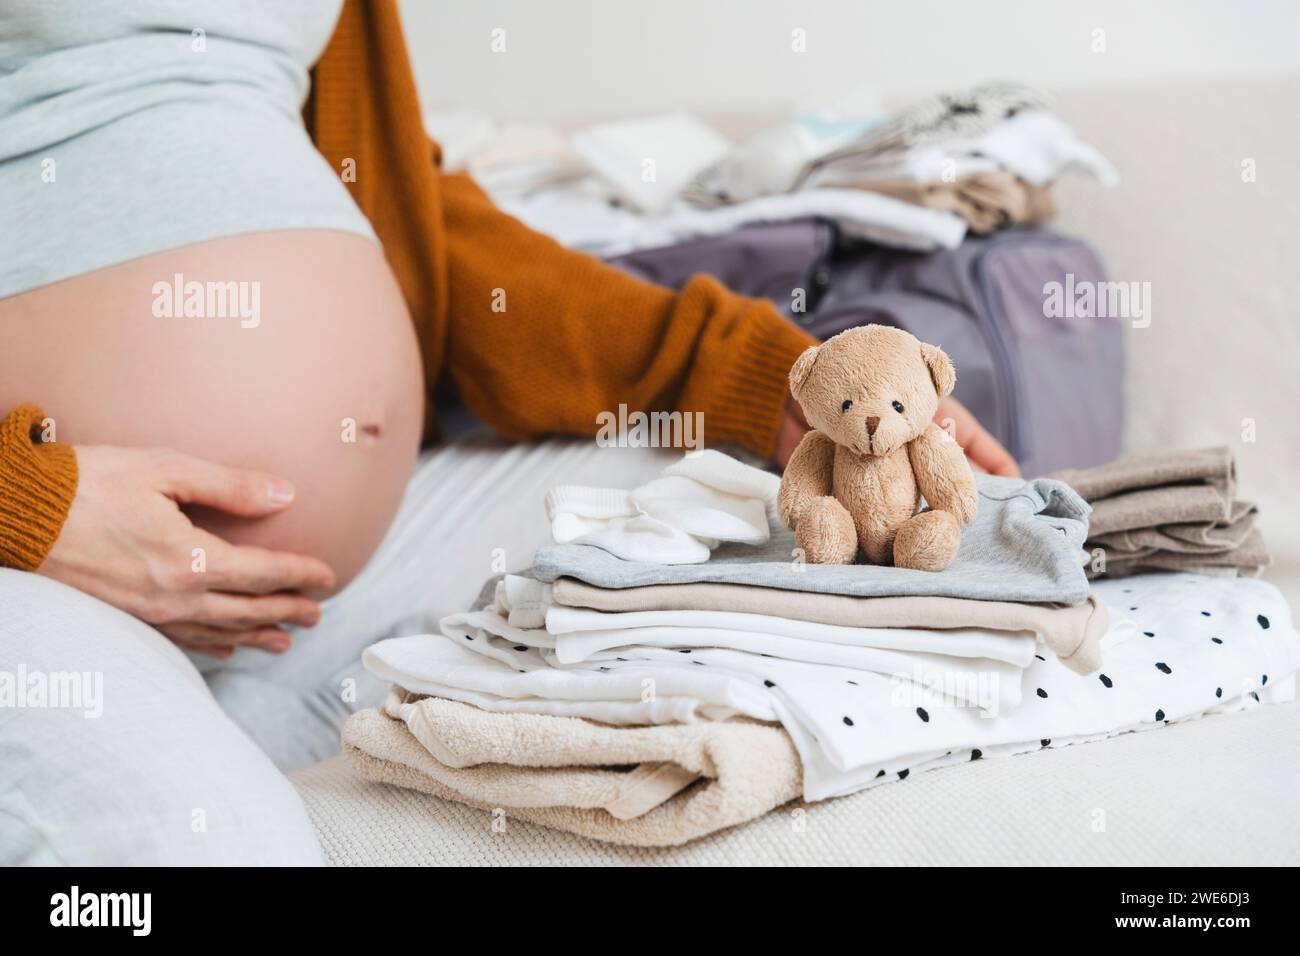 Femme enceinte assise avec un ours en peluche et emballant des vêtements à la maison Banque D'Images